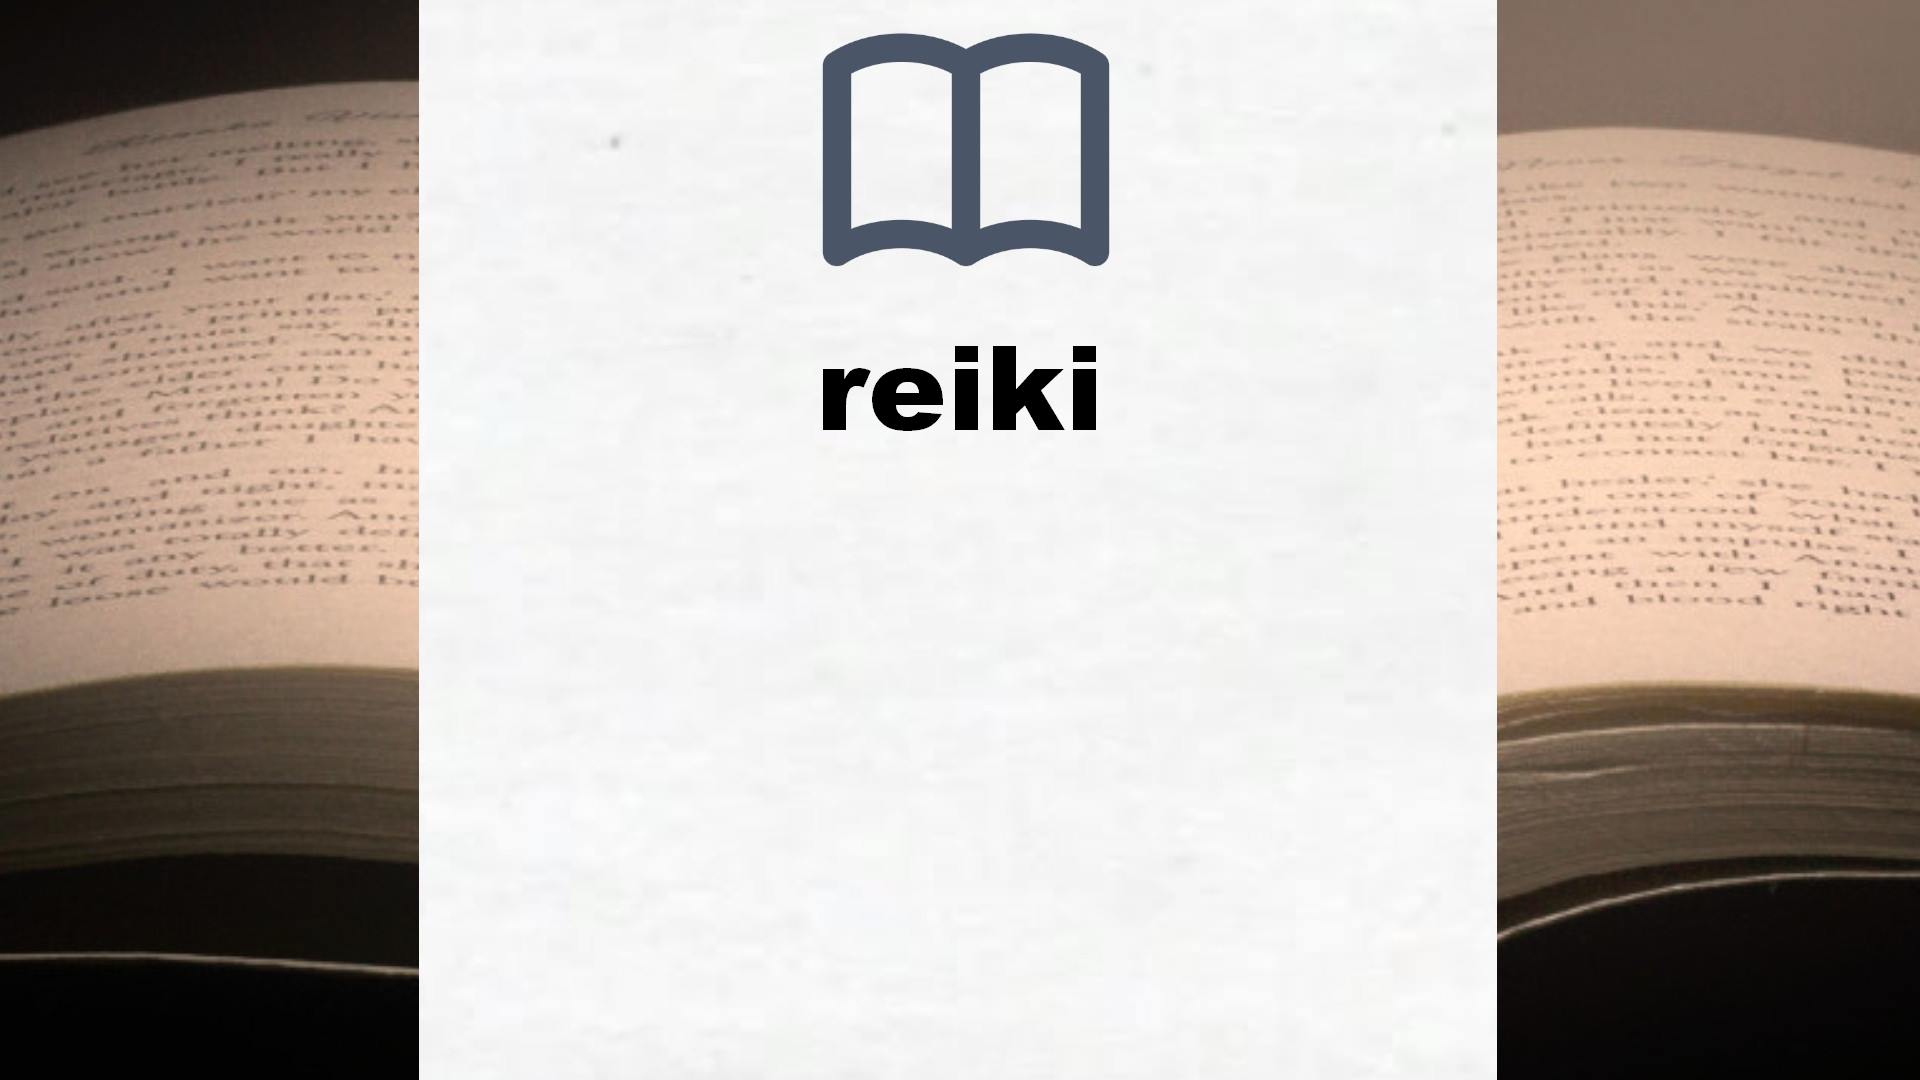 Libros sobre reiki